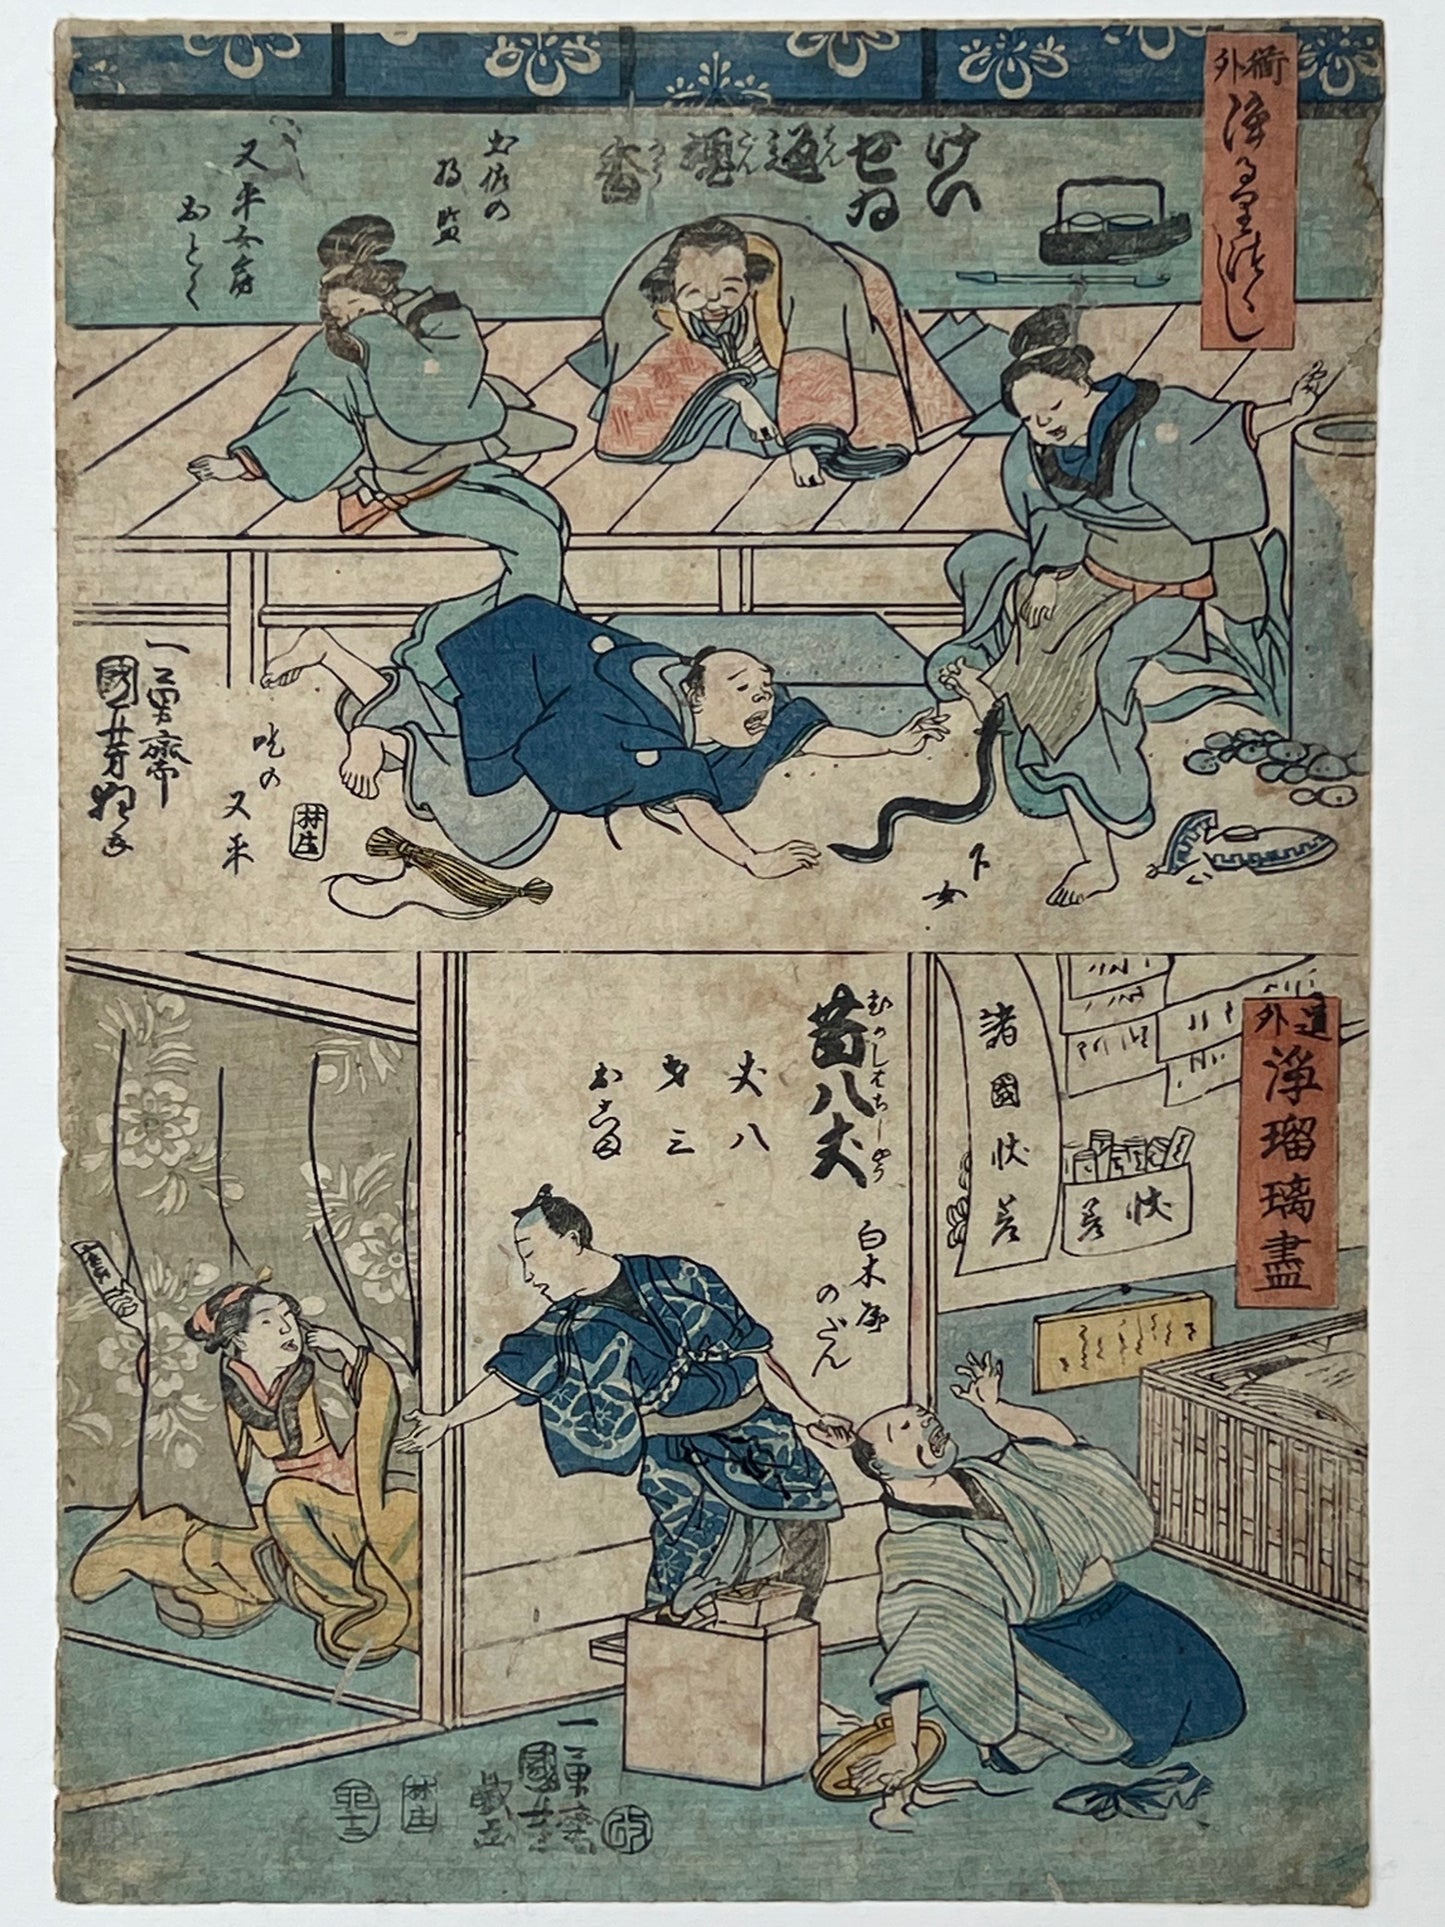 estampe japonaise humoristique , un homme courre après un serpent, une femme effrayée, un homme tire les cheveux d'un autre, des spectateurs rigolent